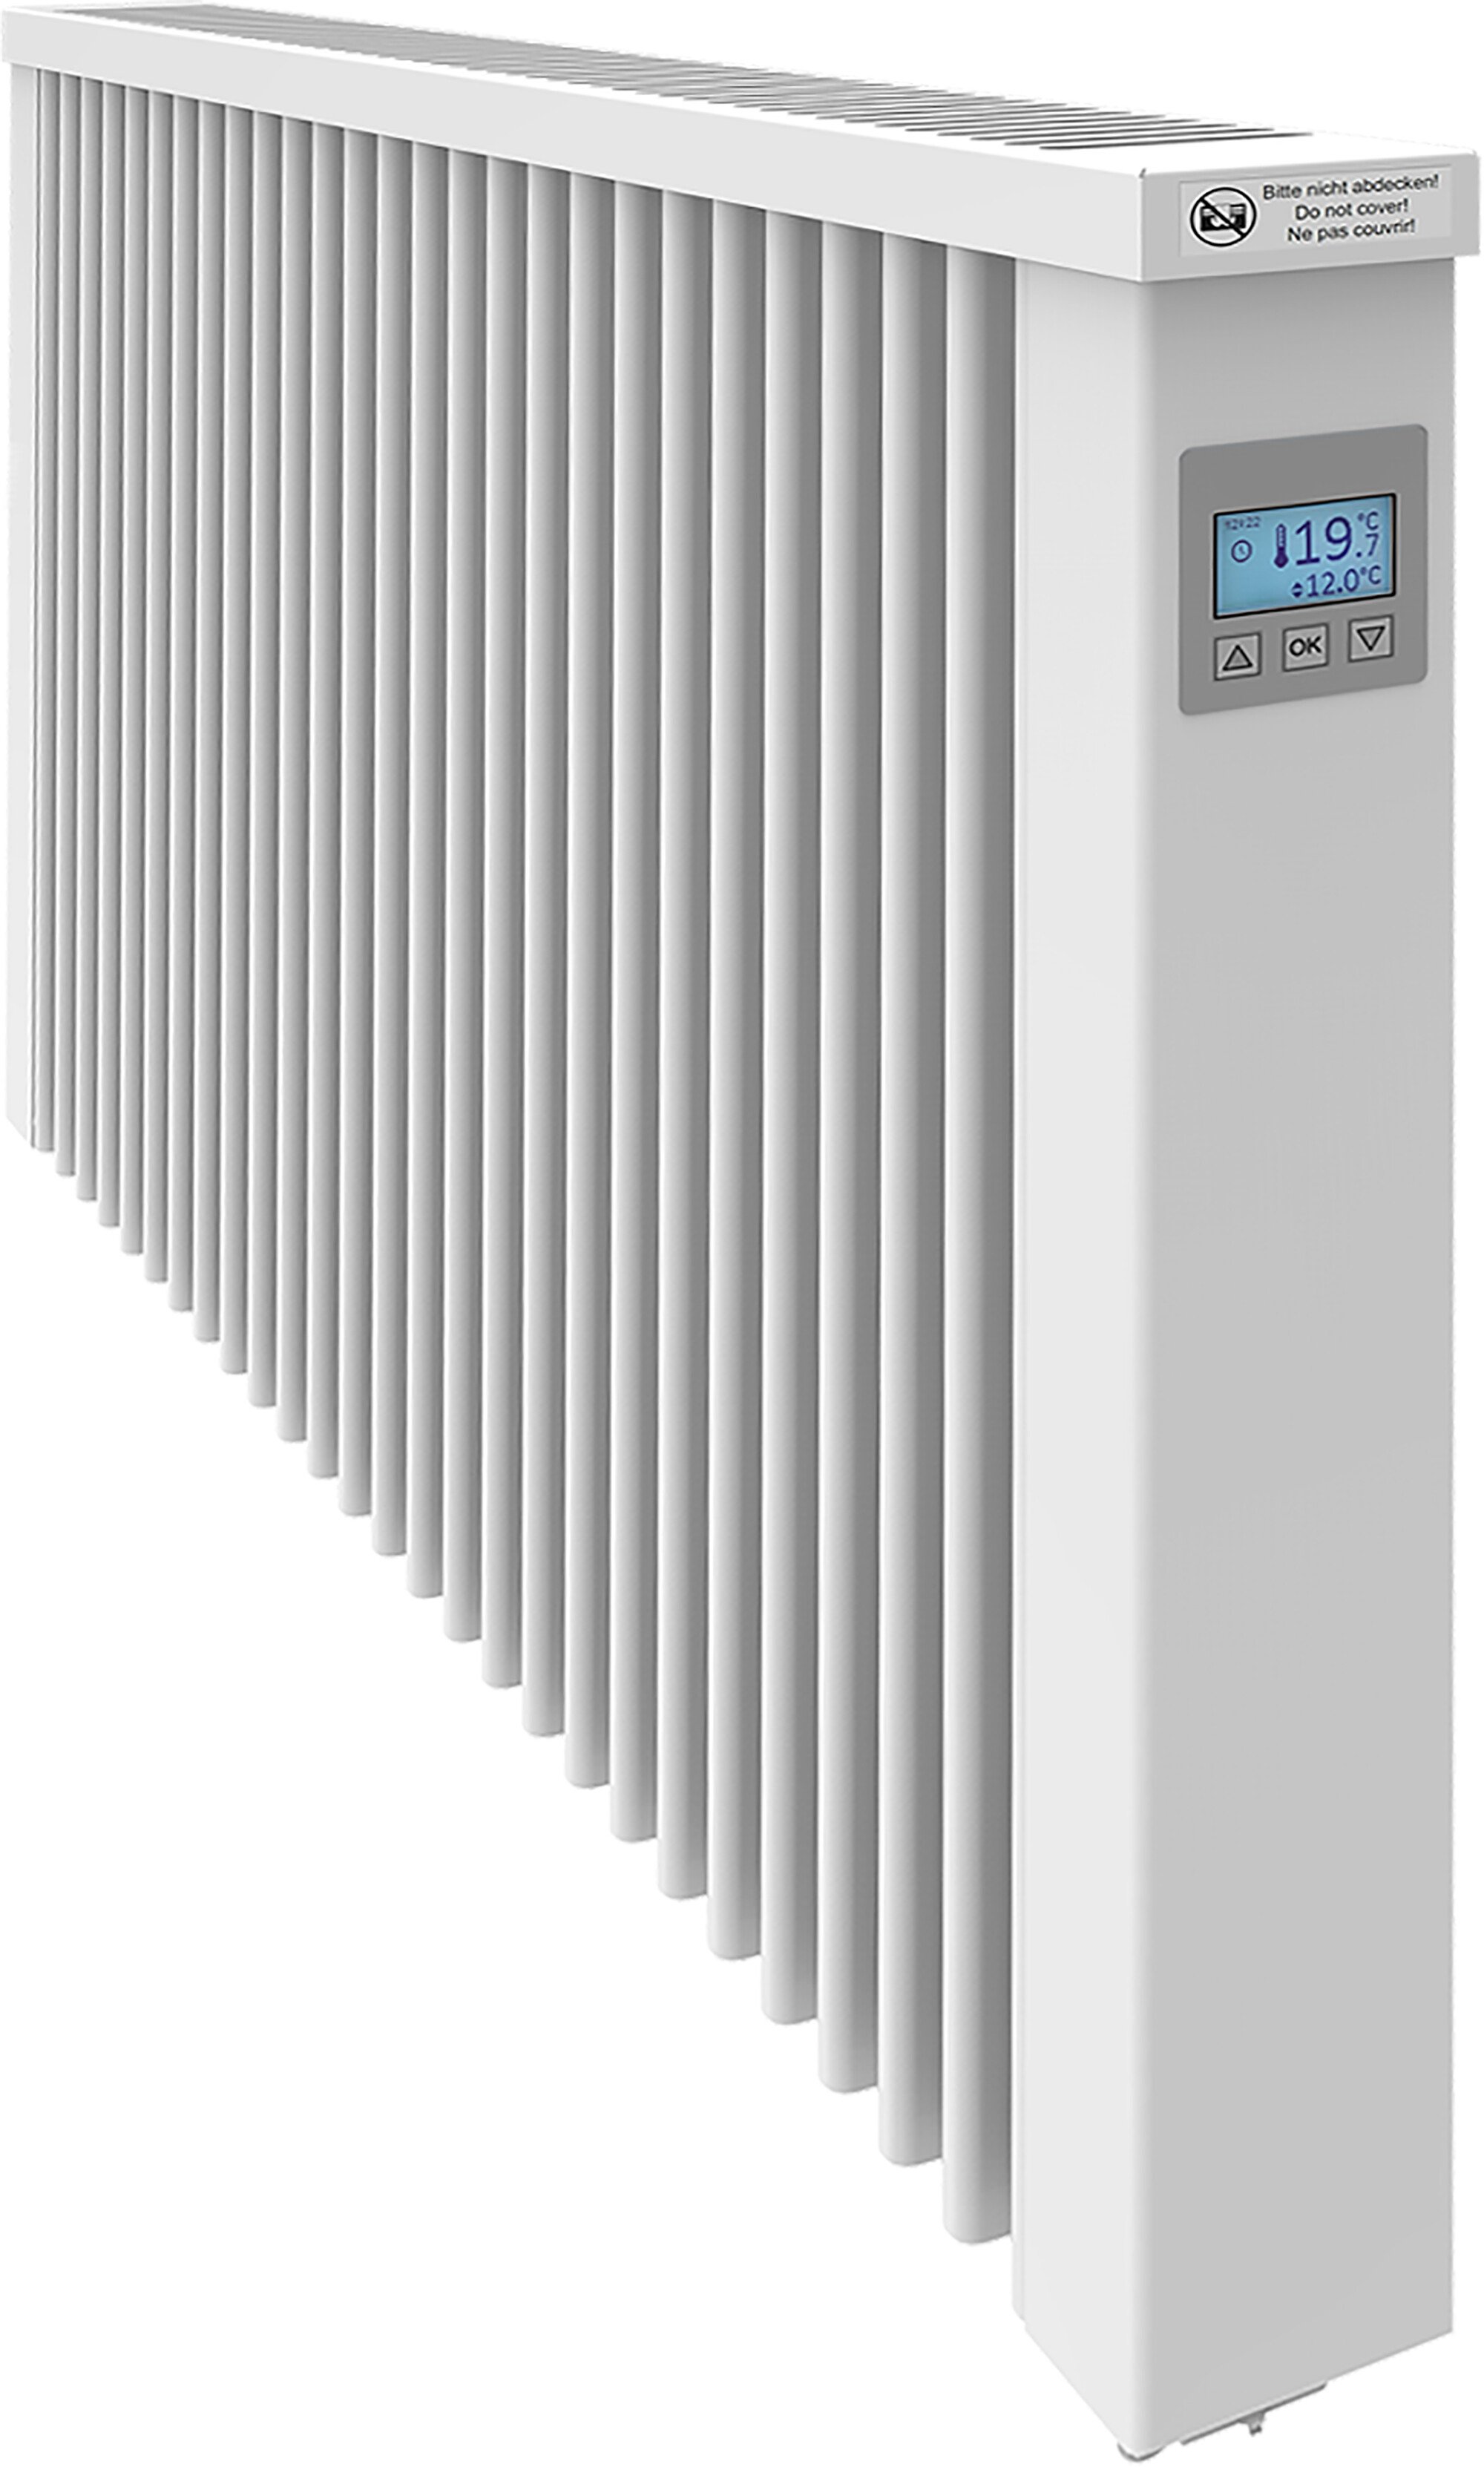 clay core radiators